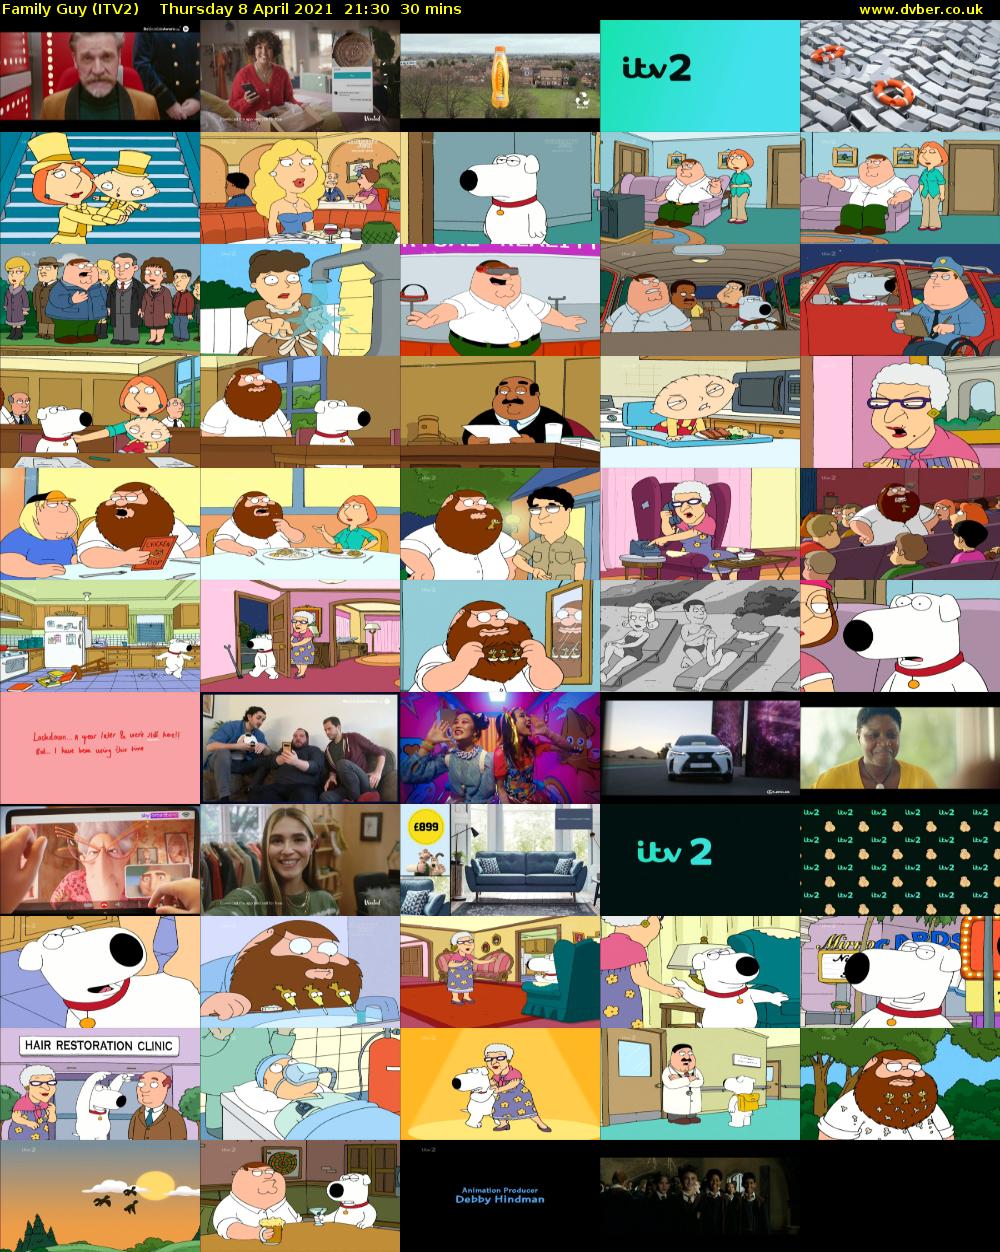 Family Guy (ITV2) Thursday 8 April 2021 21:30 - 22:00